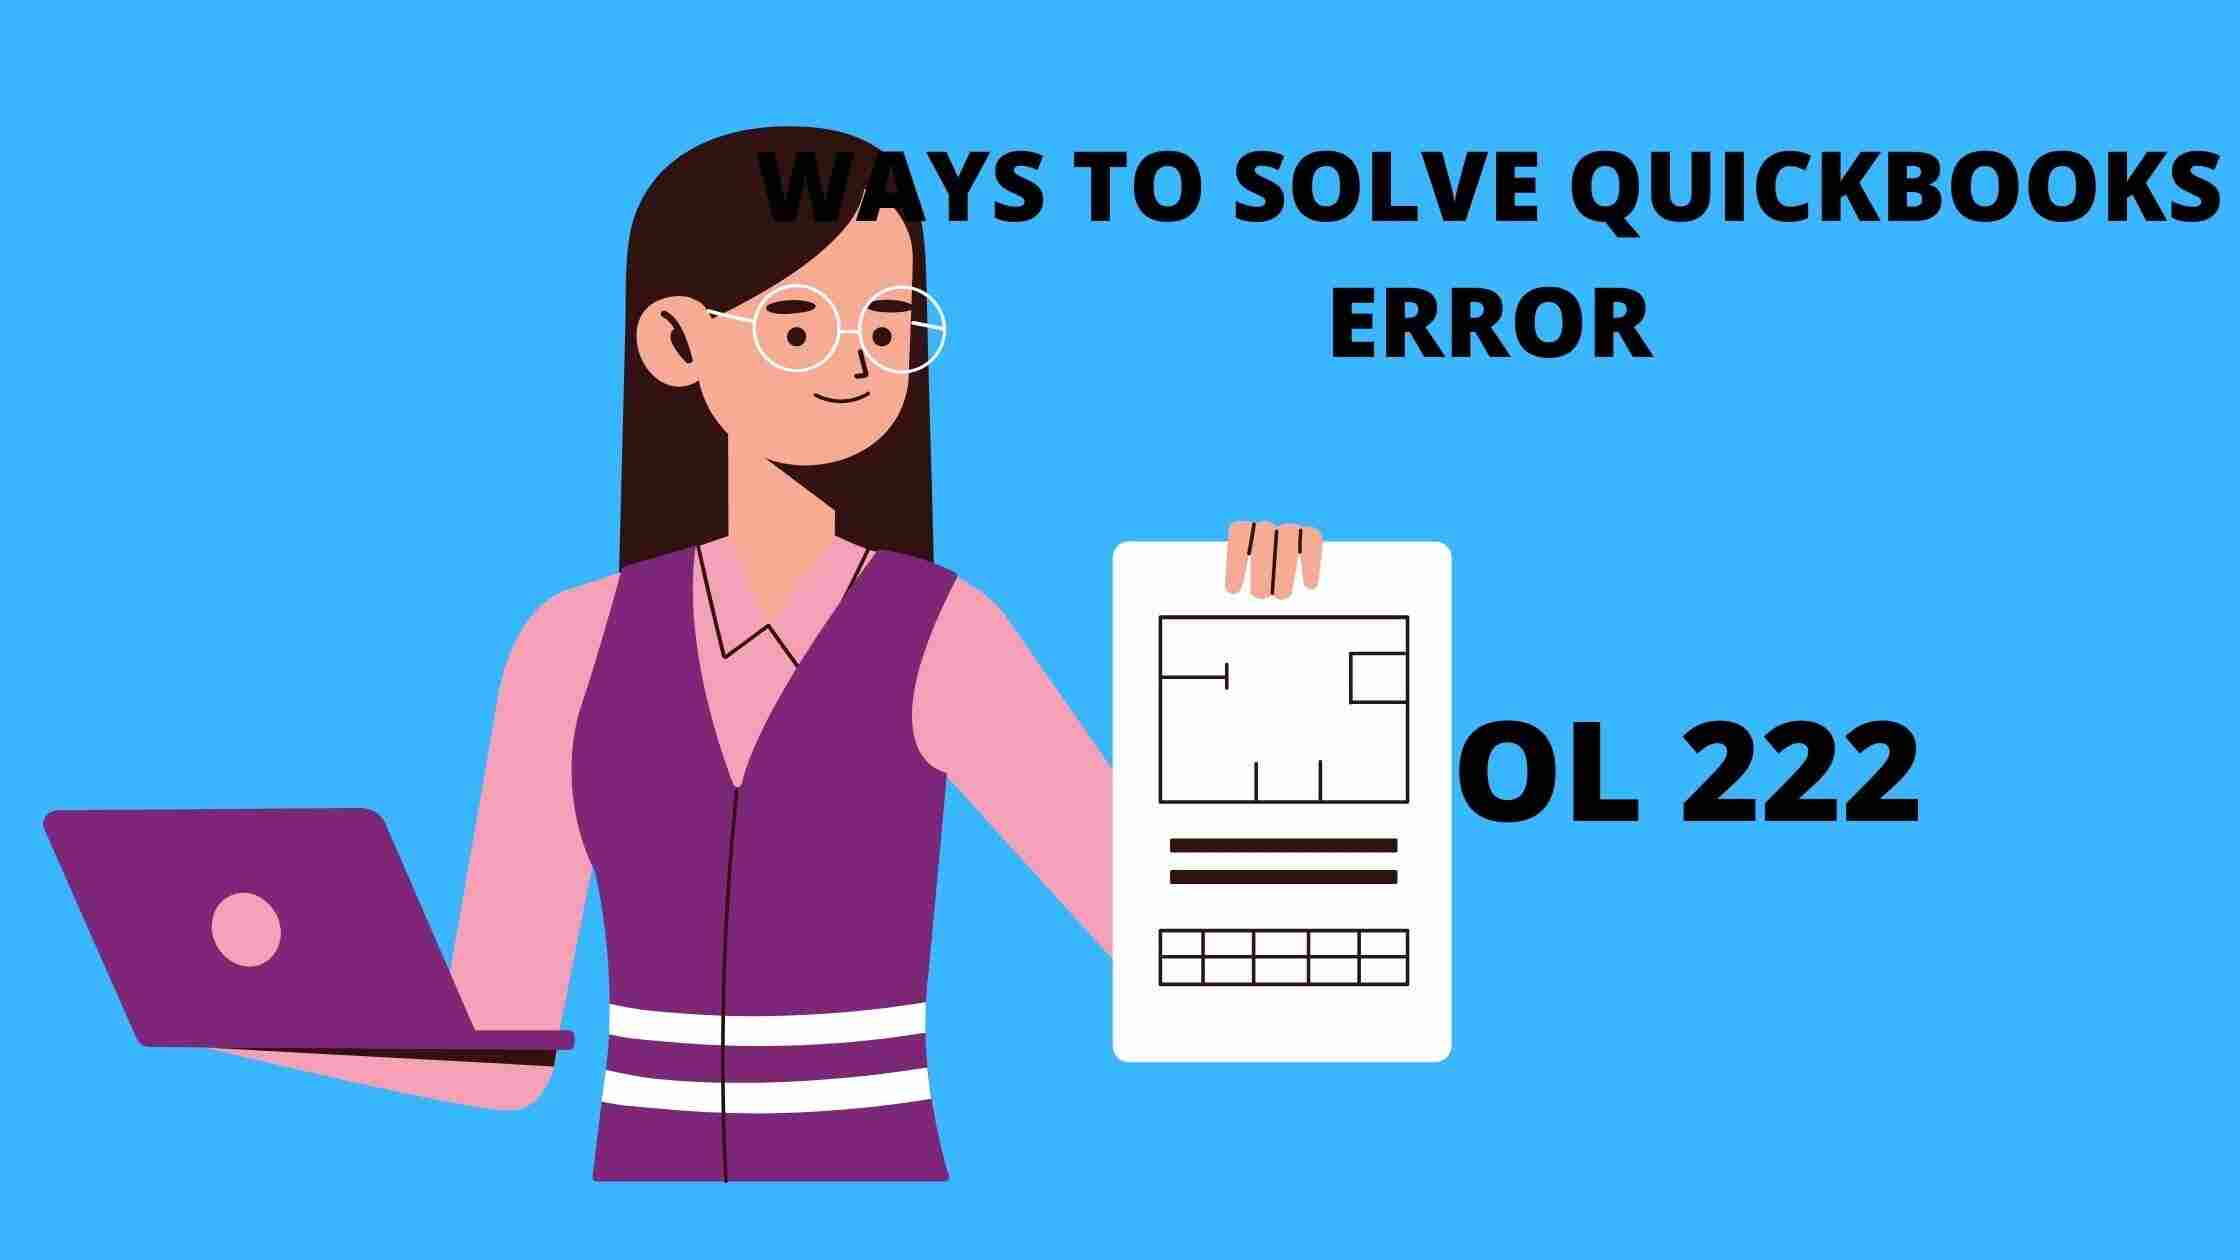 QuickBooks Error Code OL 222